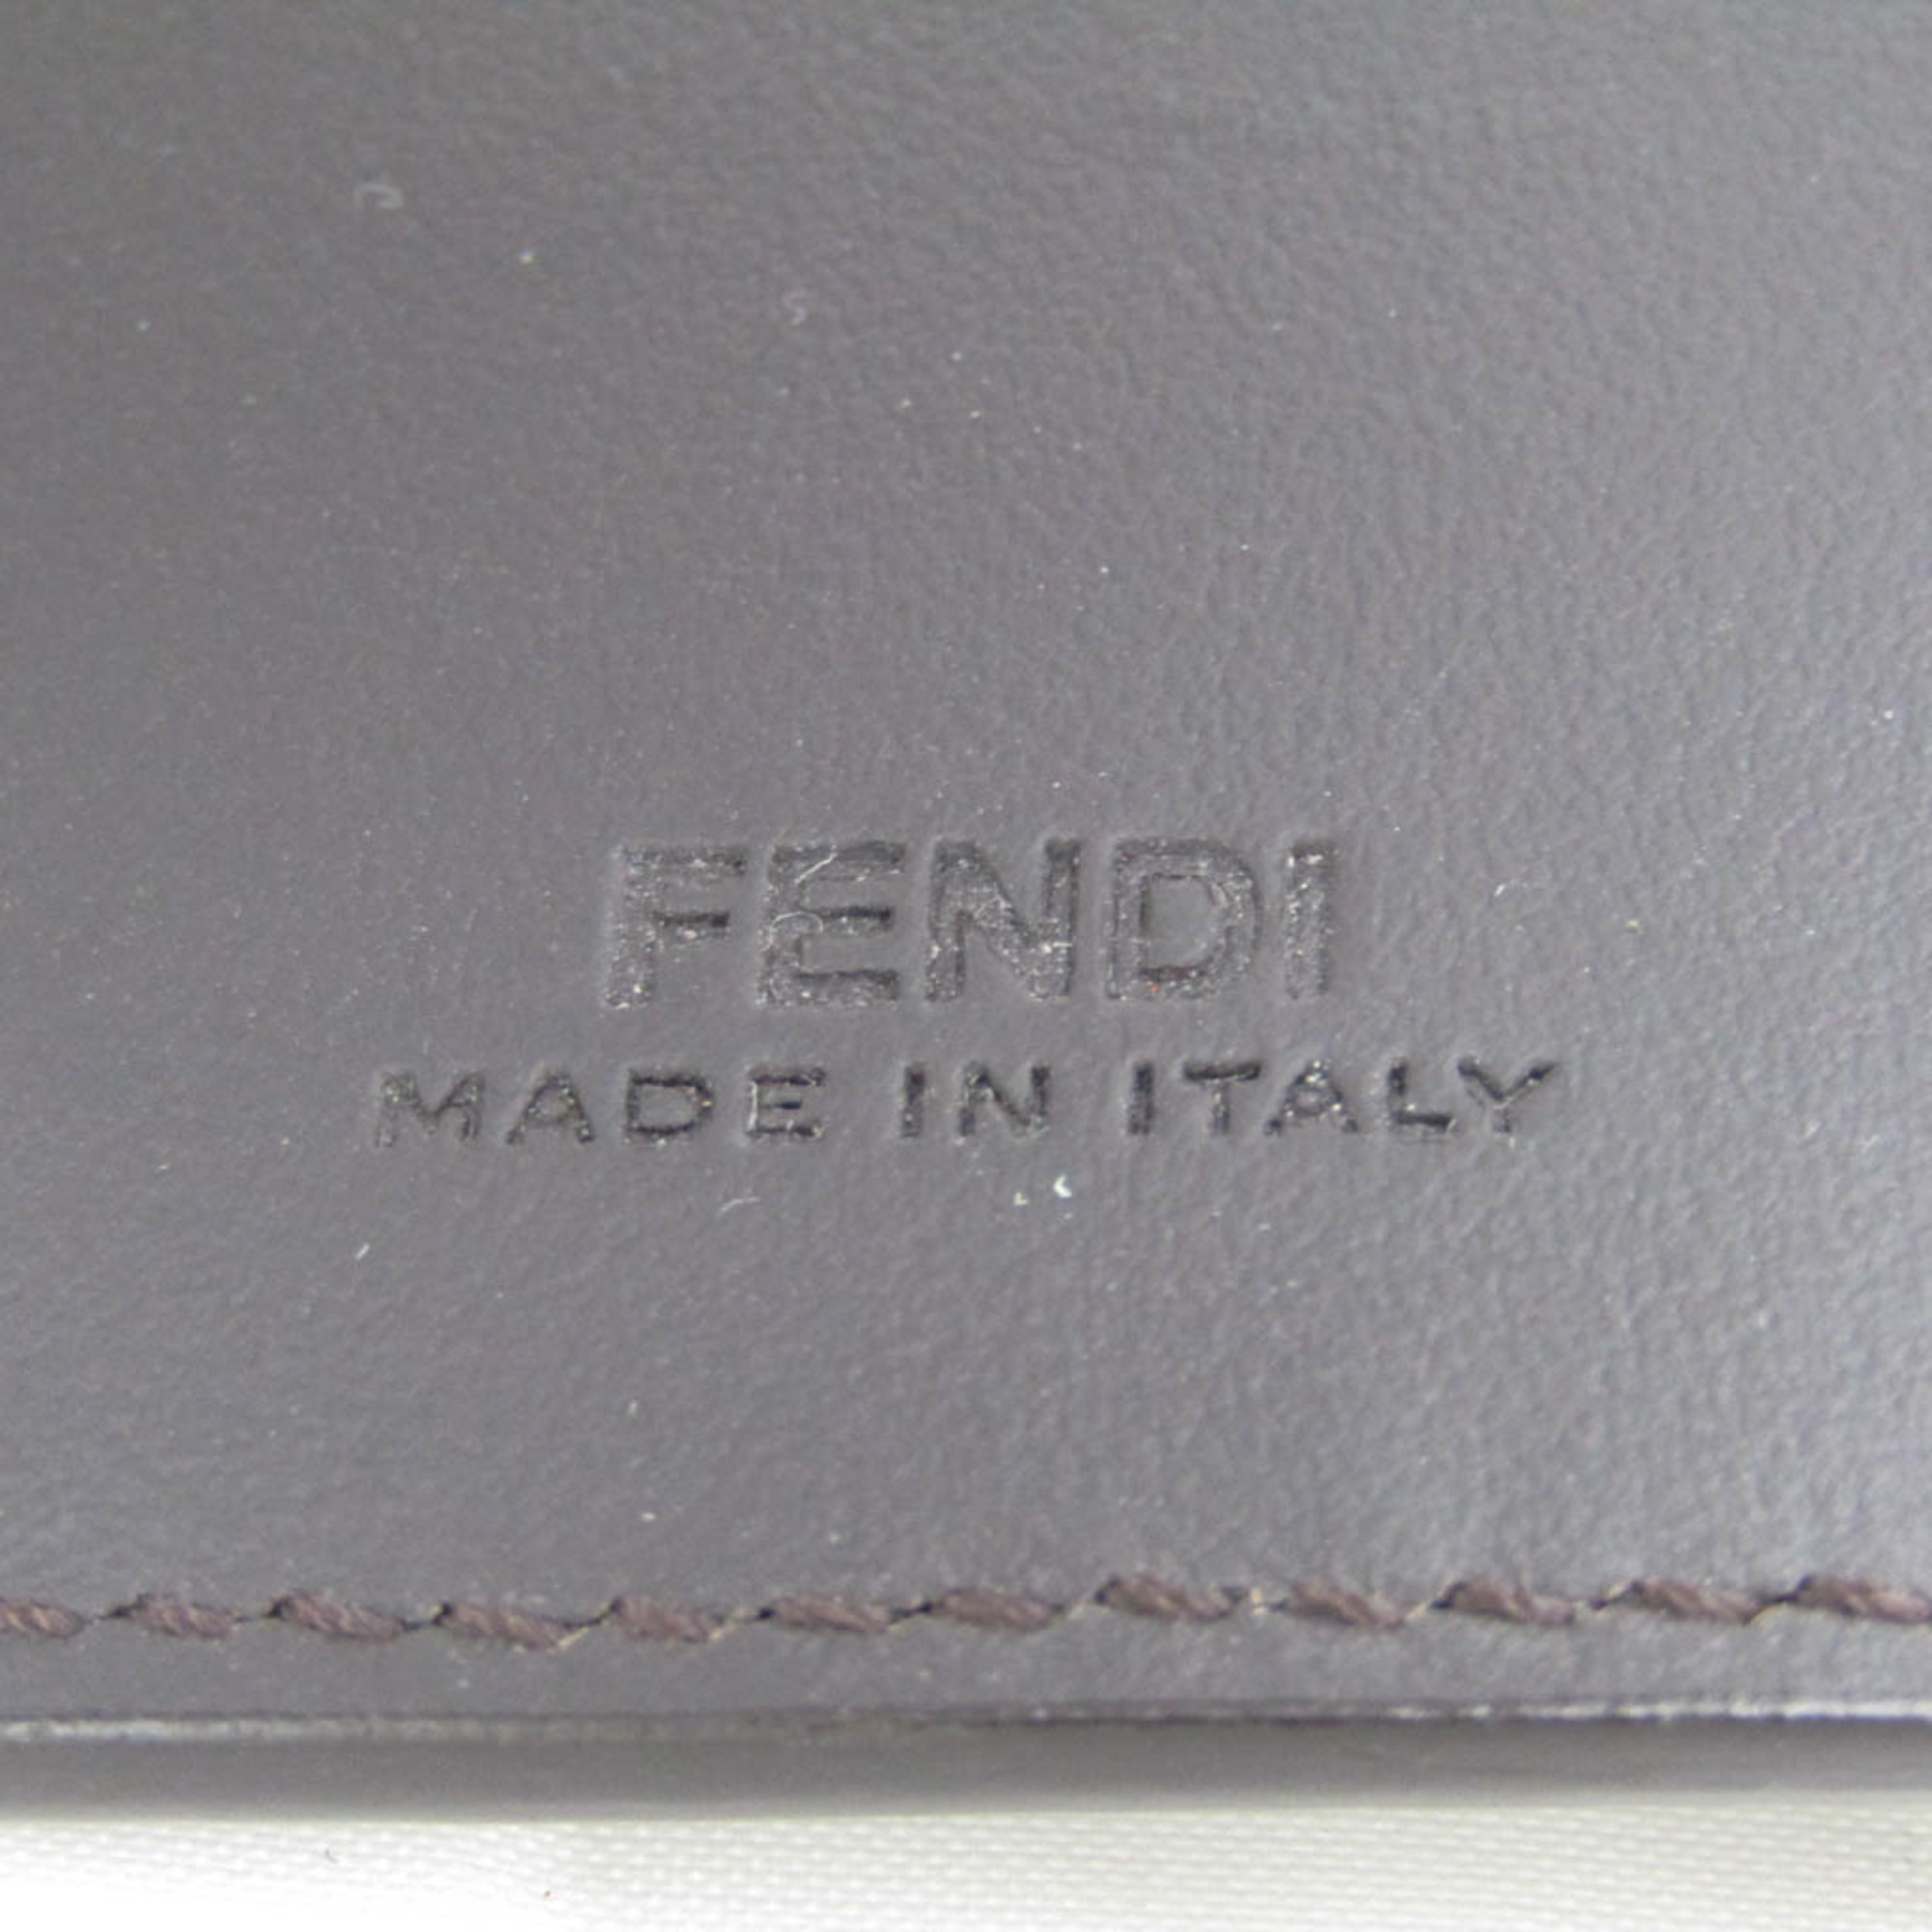 フェンディ(Fendi) ズッカ 7AP011 メンズ,レディース PVC レザー キーケース